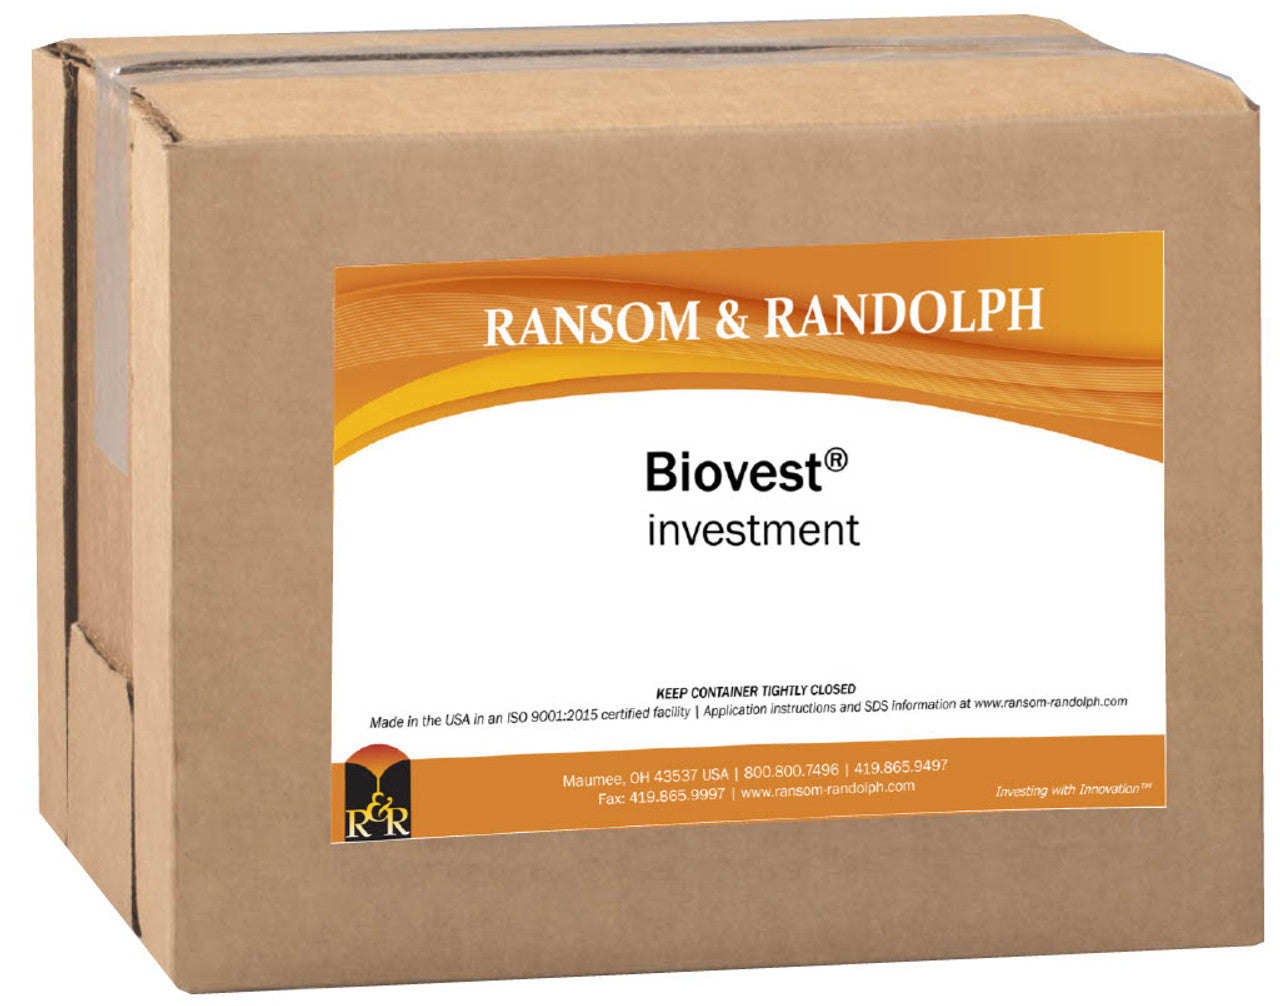 Ransom & Randolph Biovest® investment, 25lb Carton